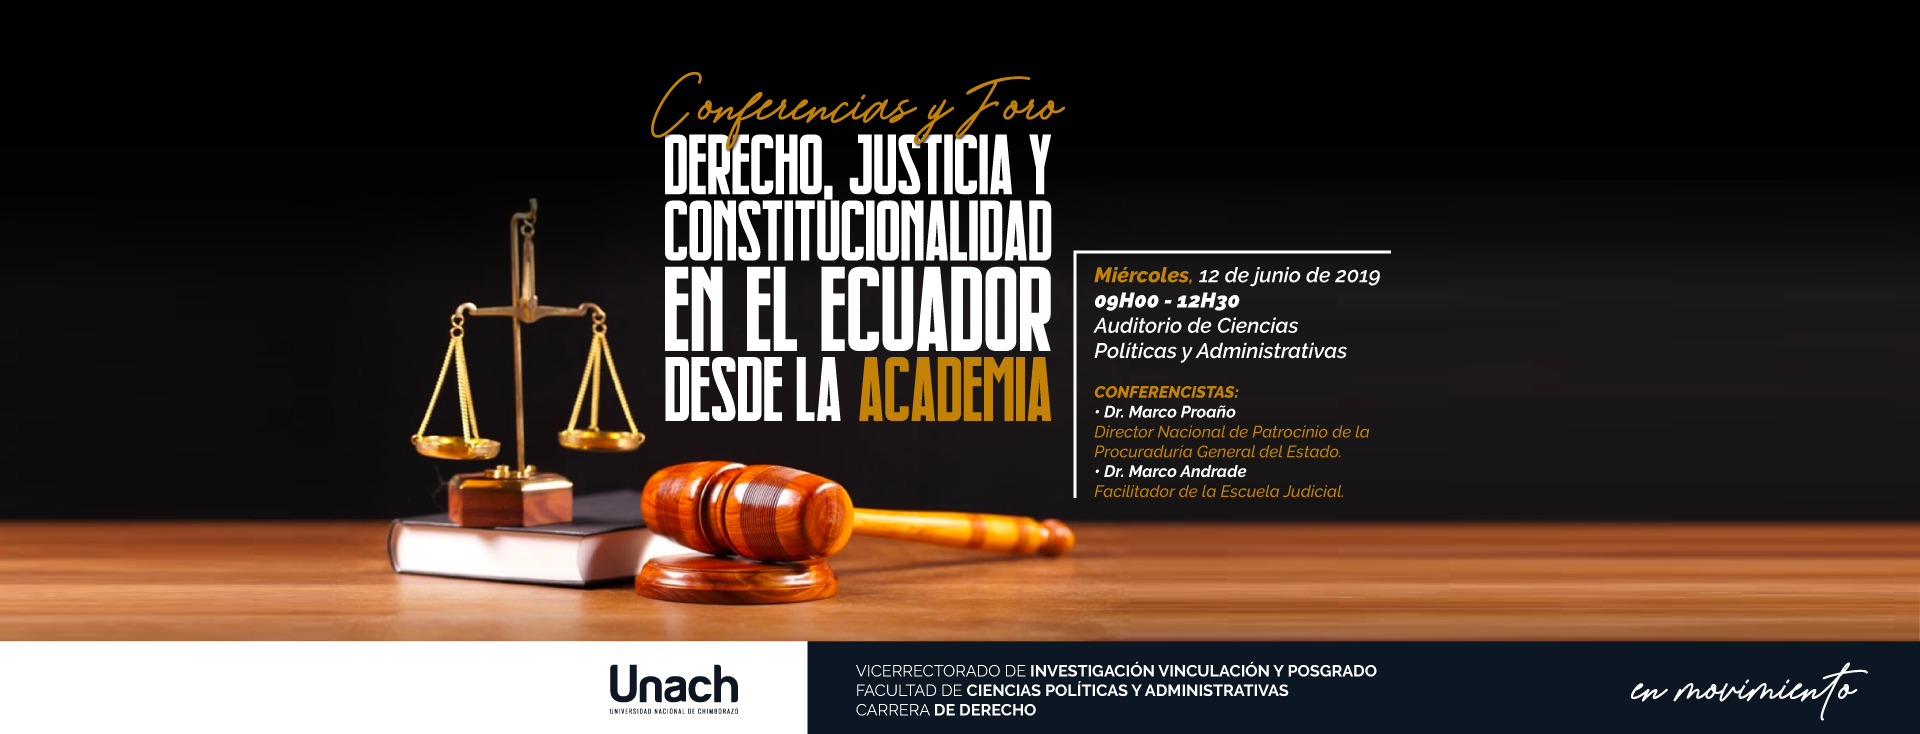 CONFERENCIAS Y FORO, DERECHO JUSTICIA Y CONSTITUCIONALIDAD EN EL ECUADOR DESDE LA ACADEMIA